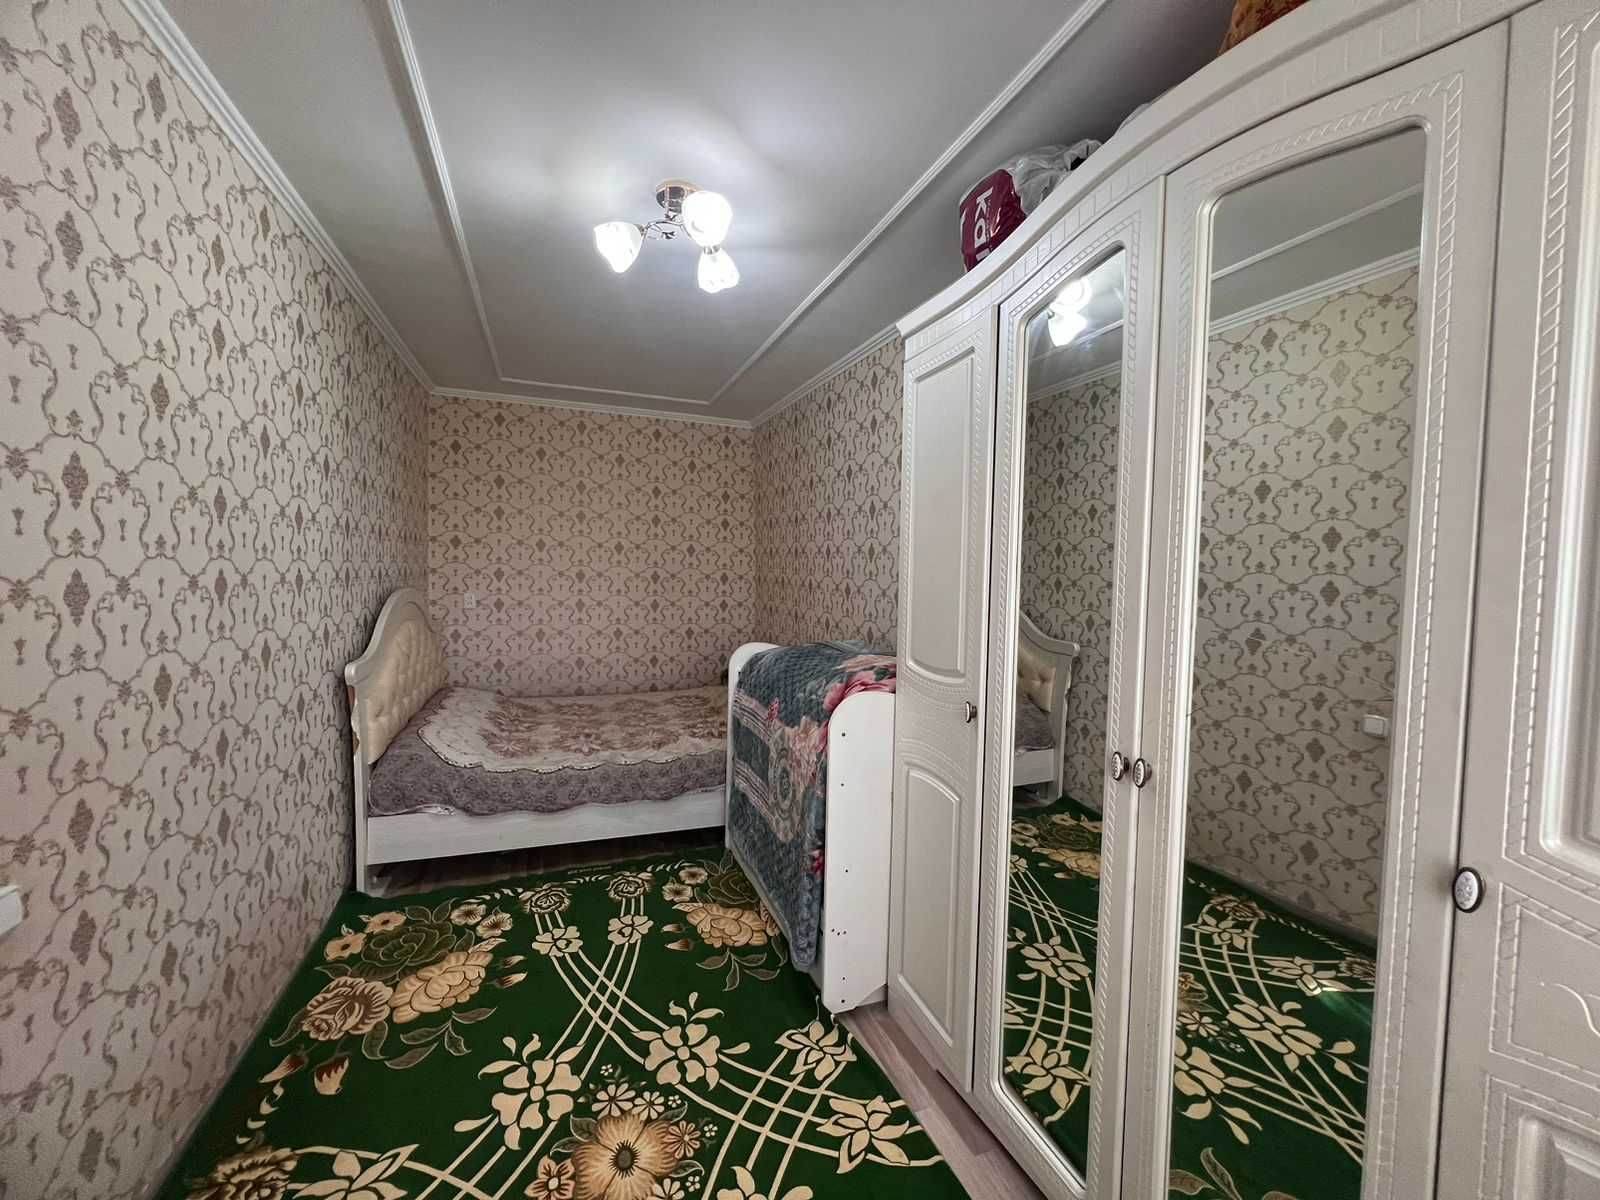 2-комнатная квартирa в Майкудуке на 17 мкр: